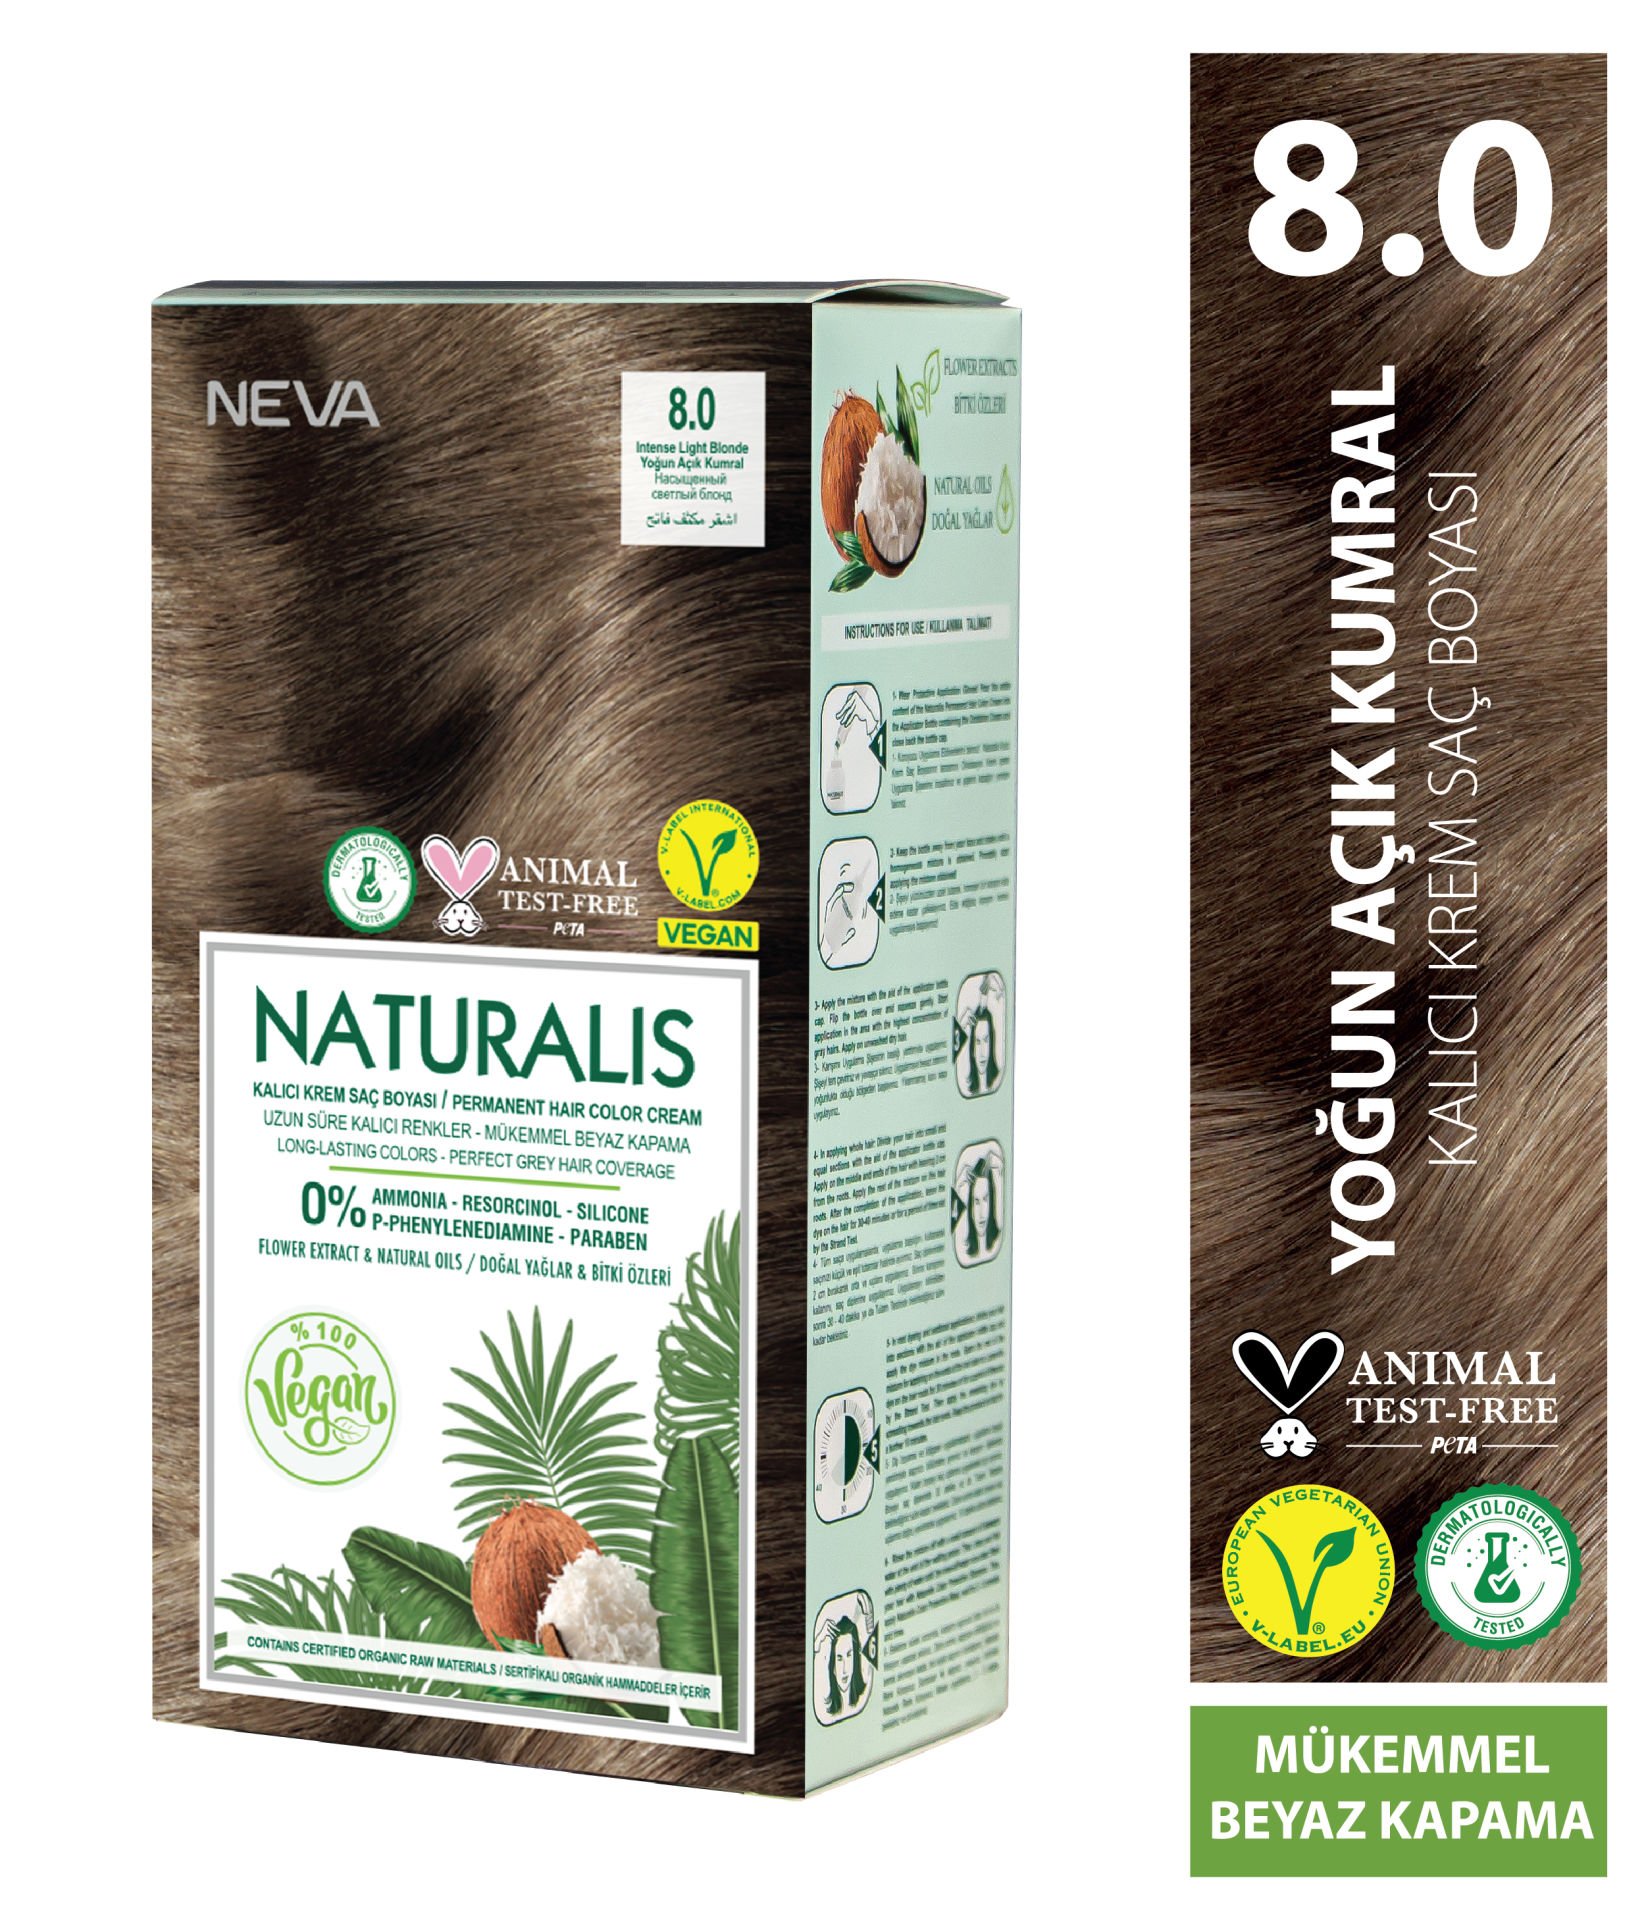 Nevacolor Naturalis Vegan Yoğun Açık Kumral 8.0 Kalıcı Krem Saç Boyası Seti